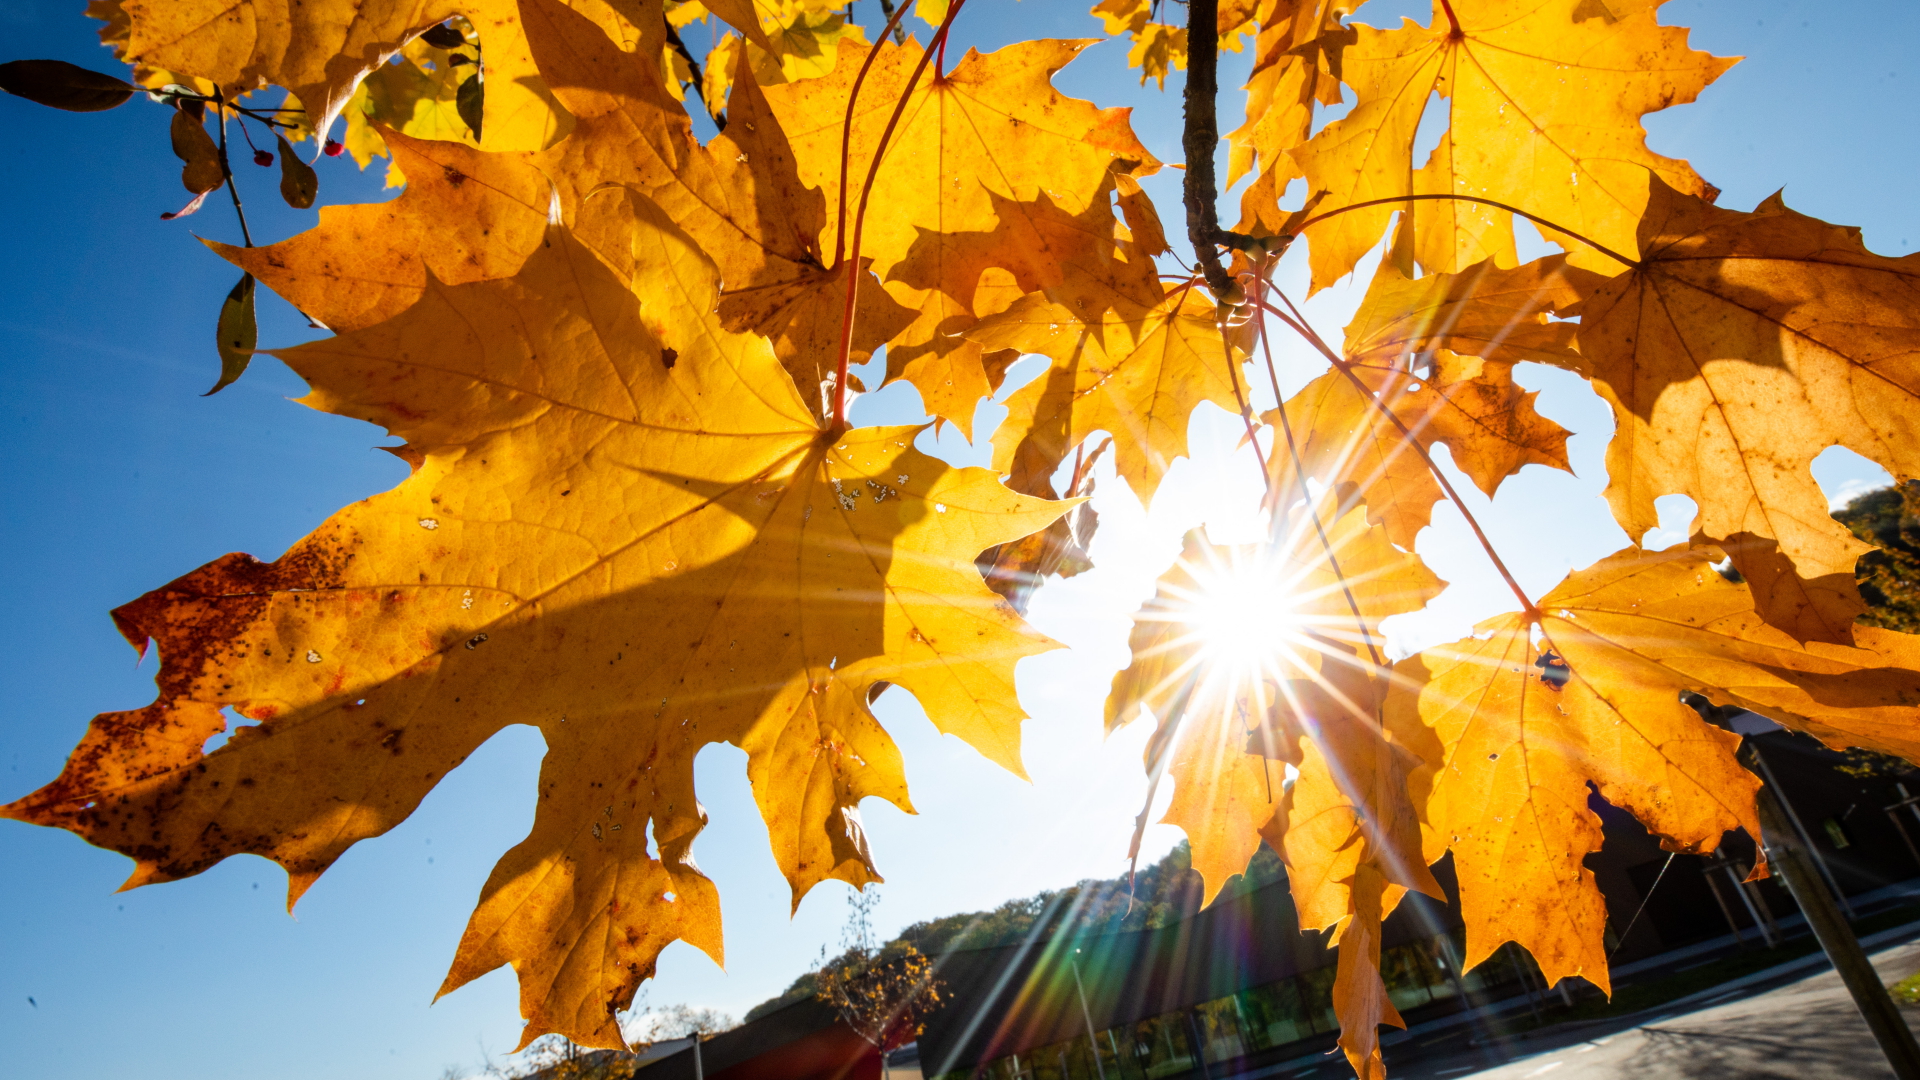 Bei schönem Wetter strahlt die Sonne durch herbstlich gefärbte Blätter. | dpa